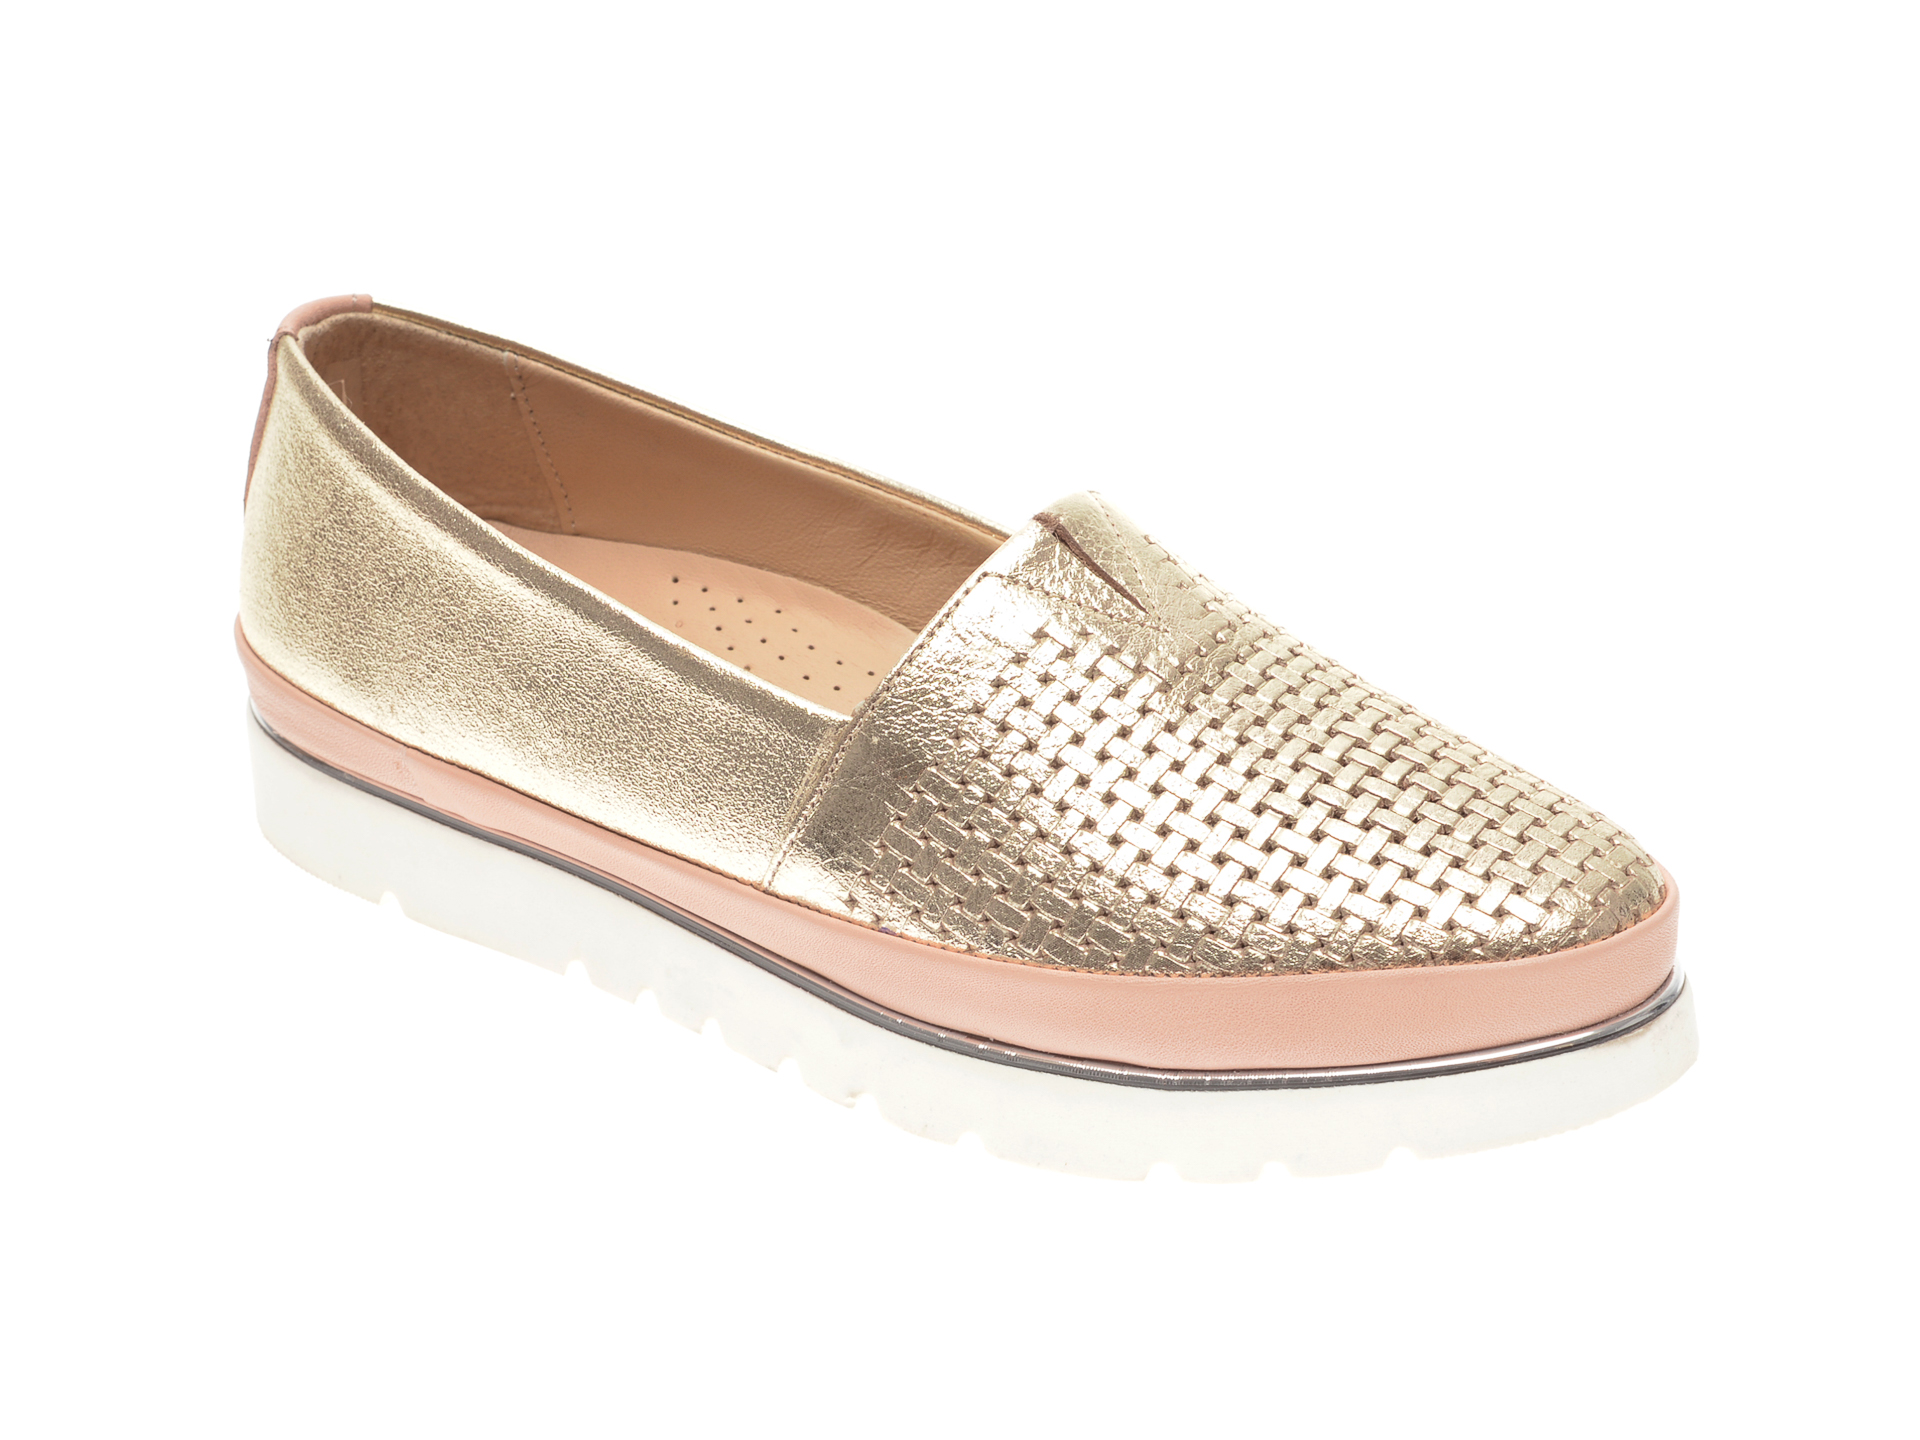 Pantofi FLAVIA PASSINI aurii, 14400, din piele naturala